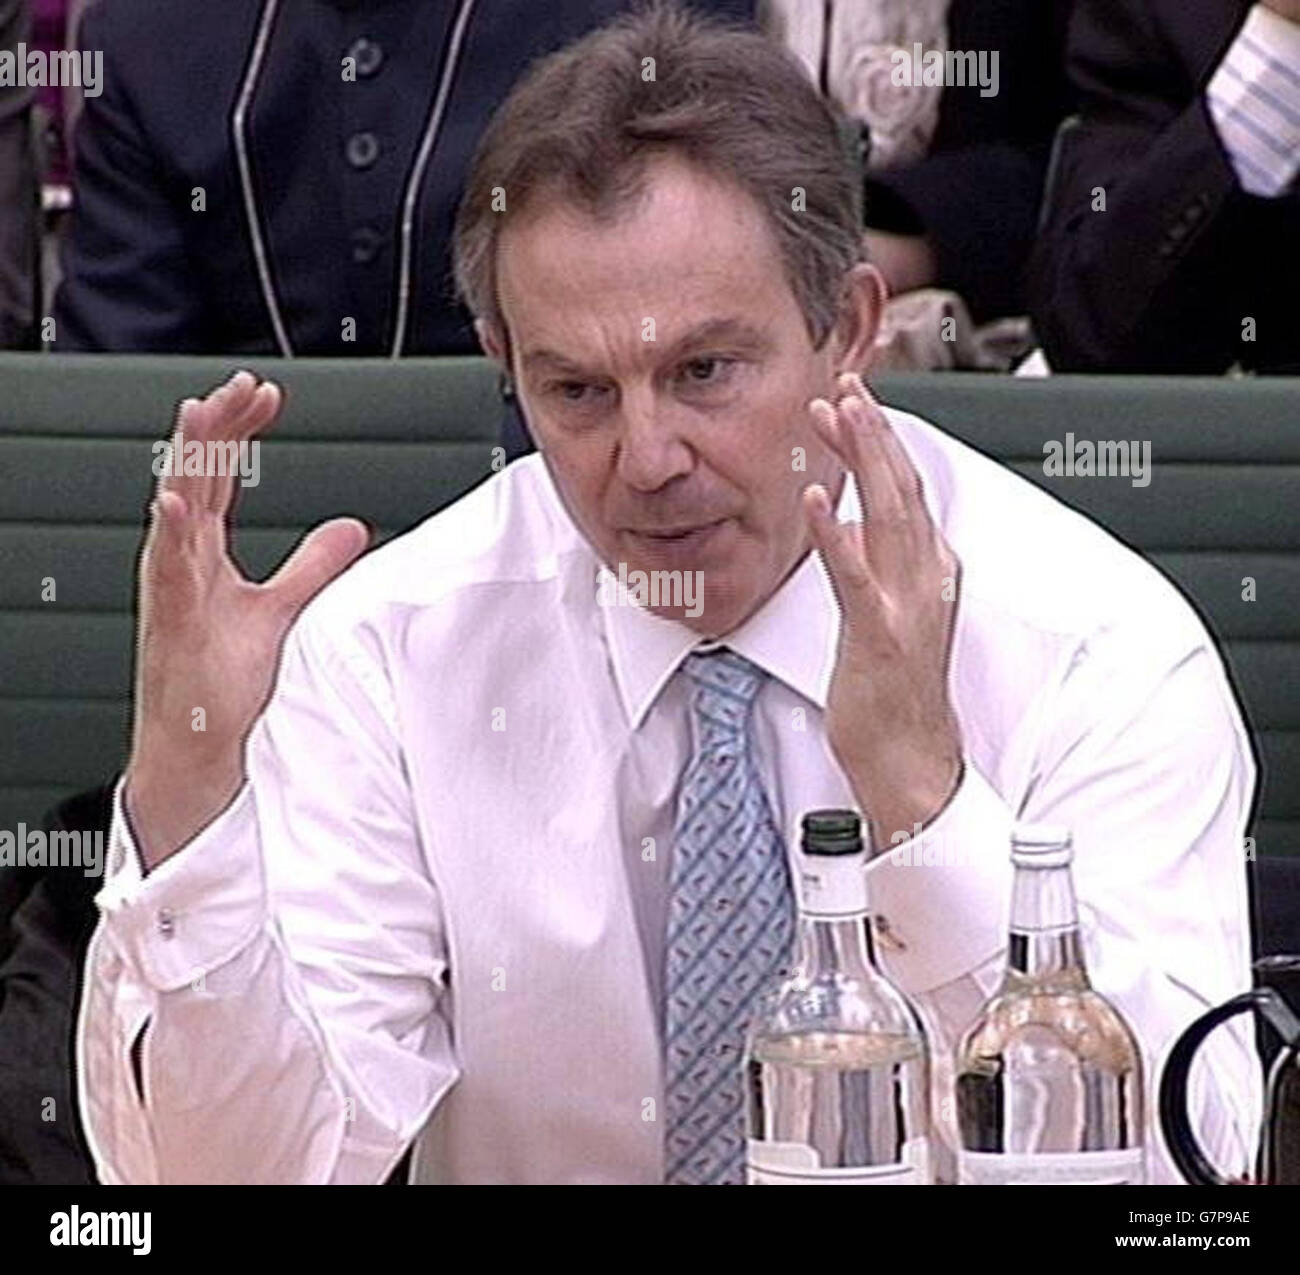 Der britische Premierminister Tony Blair gibt dem Verbindungsausschuss des Unterhauses in Westminster Beweise. Während zweieinhalb Stunden Befragung von hochrangigen Abgeordneten wurde er über die jüngsten Wahlen im Irak, im Iran und die öffentlichen Ausgaben befragt. Stockfoto